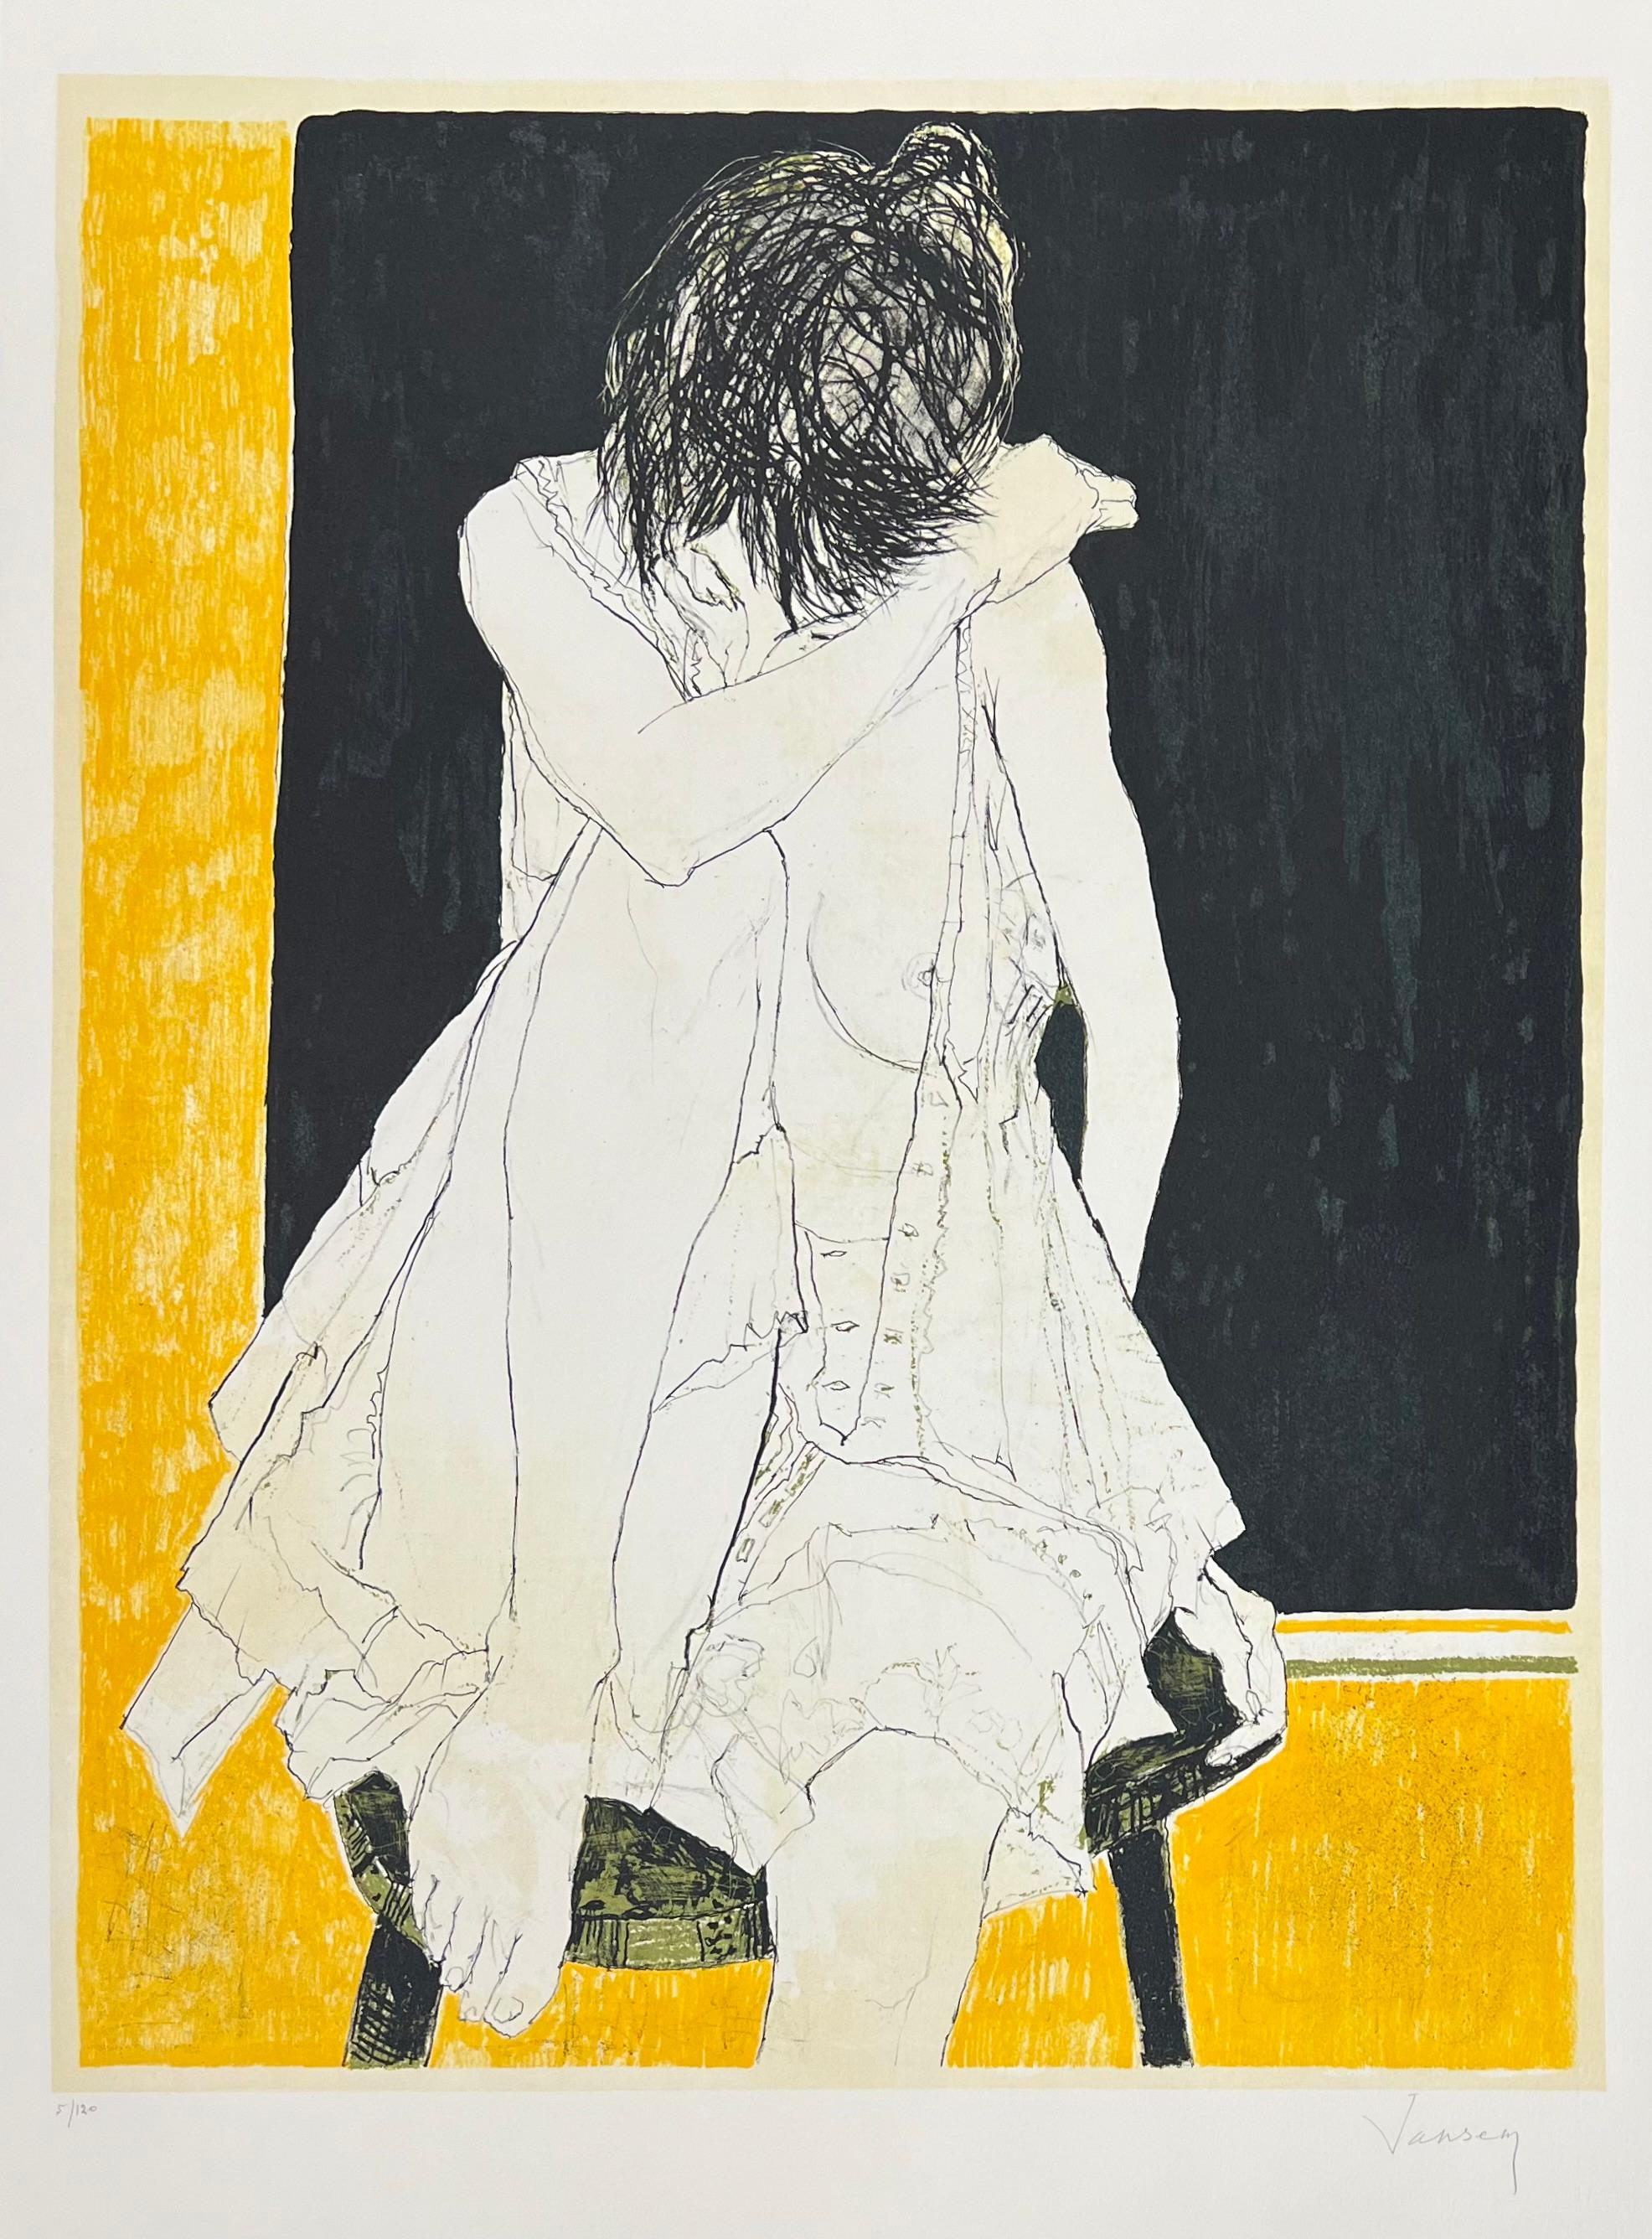 Jean Jansem (1920-2013) 
Sonia fond jaune, 1995
Lithographie sur papier Arches
Signée en bas à droite et justifiée en bas à gauche 
67 x 51,5 cm / 76 x 56 cm

Rare exemplaire d'une édition à 120.  
Les 25 premiers numéros font partie de l'Album